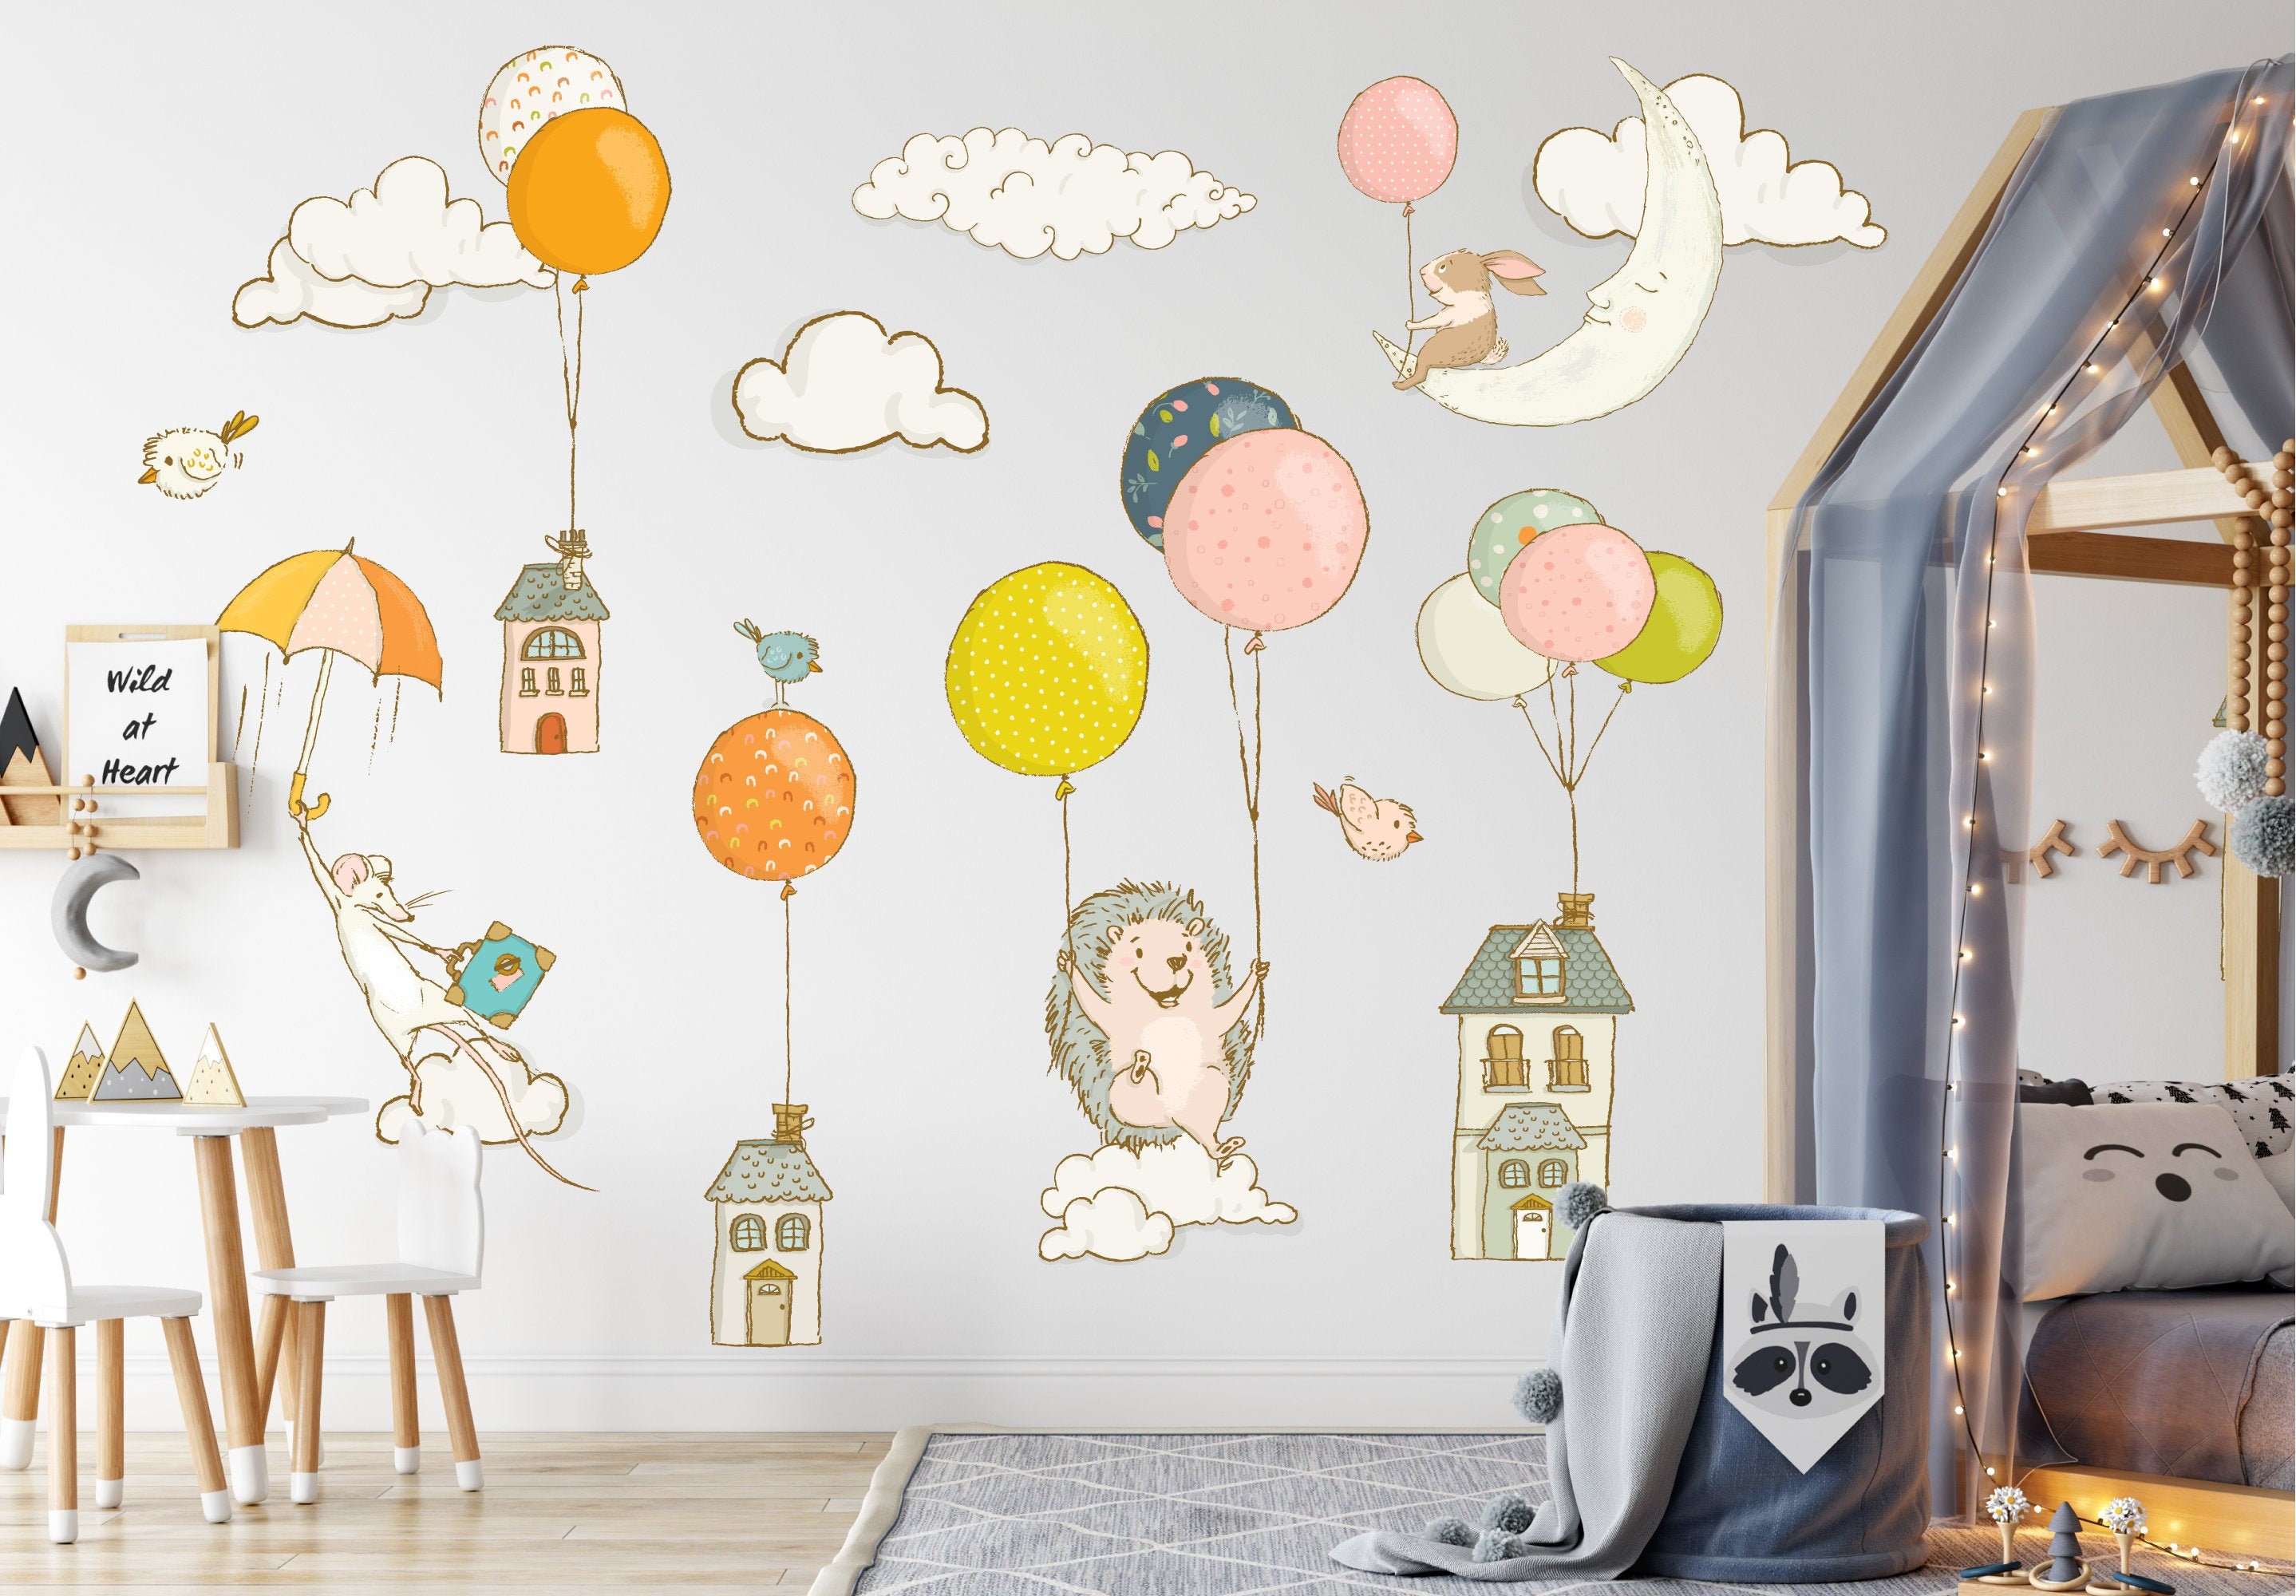 Igel, Maus, Hase und Heißluftballons Wandtattoo, Wandbild für Kinderzimmer,  Wandbild für Kinderzimmer und Kinderzimmer